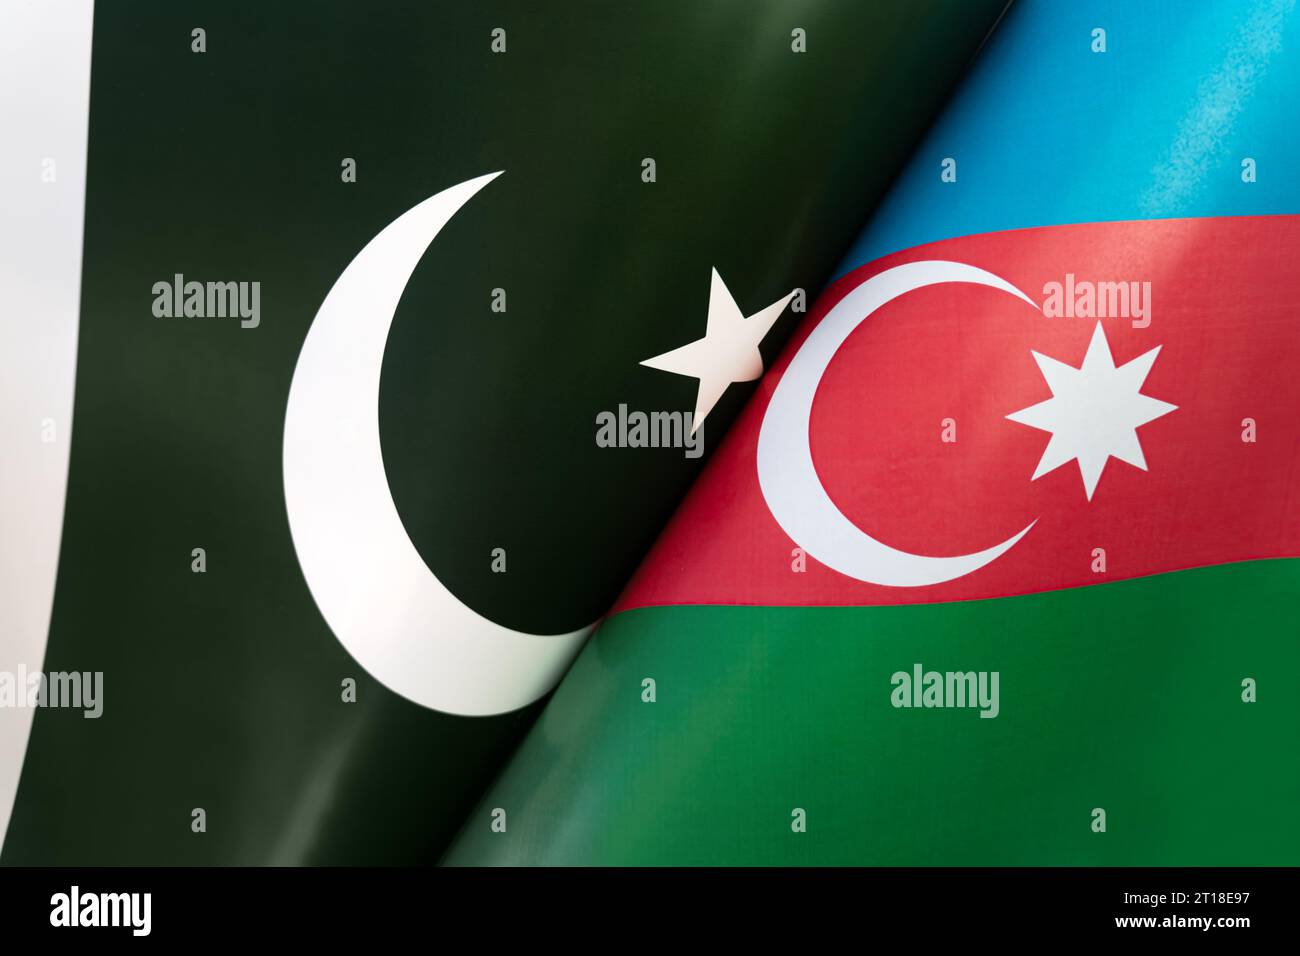 Hintergrund der Flaggen von pakistan, aserbaidschan. Das Konzept der Interaktion oder Gegenmaßnahmen zwischen den beiden Ländern. Internationale Beziehungen. p Stockfoto